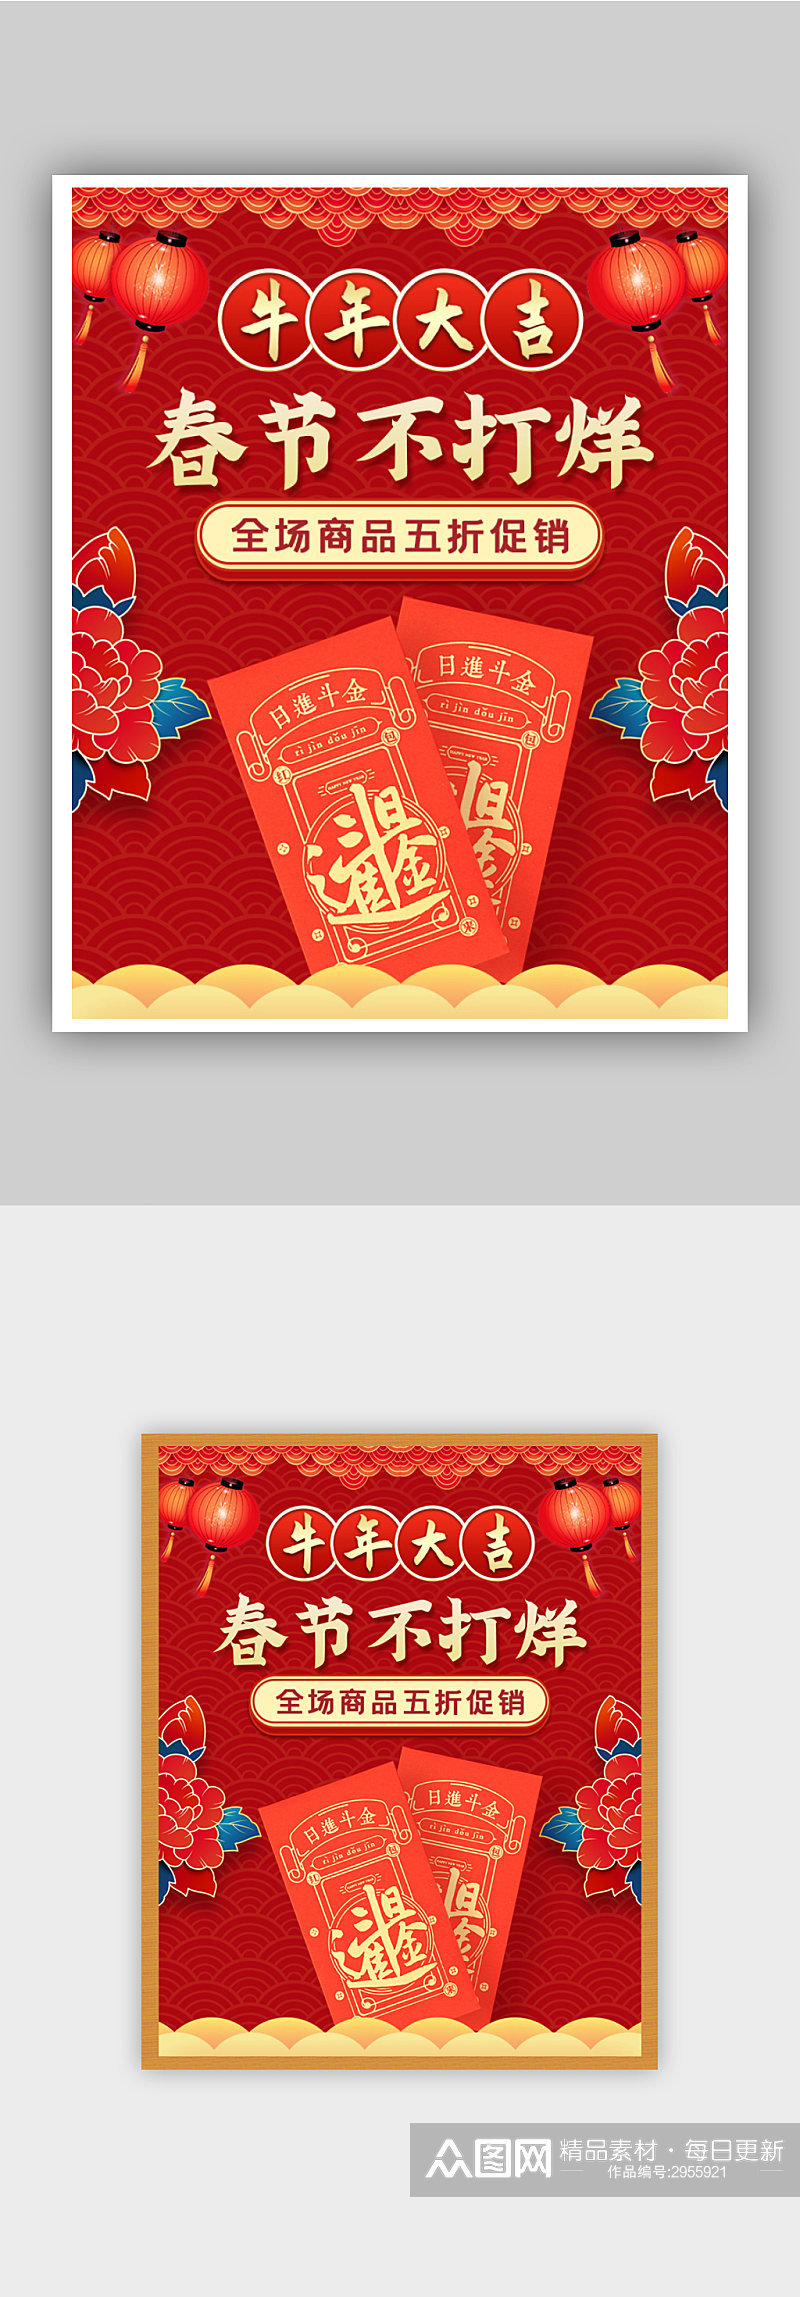 中国风春节不打烊红包促销海报素材